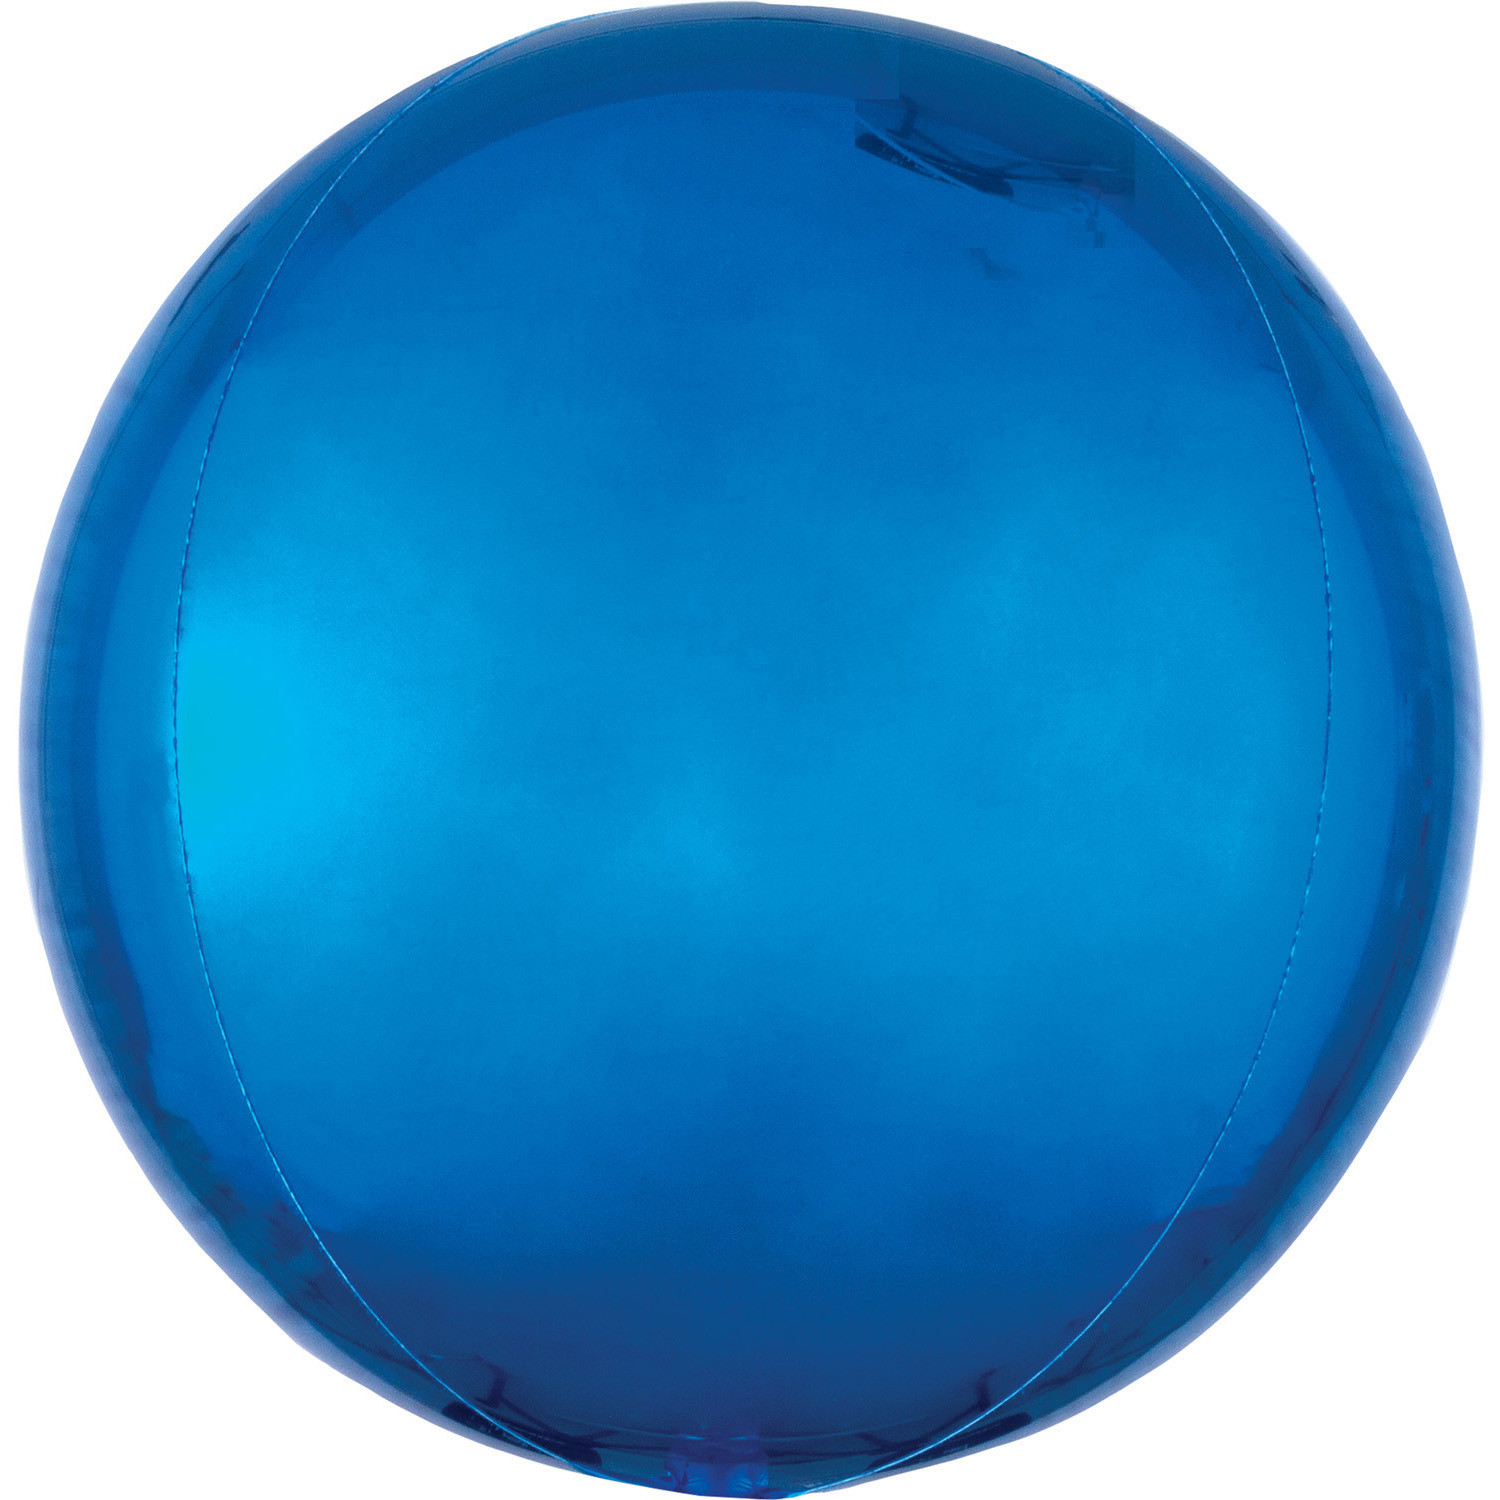 Balon foliowy Orbz - Kula niebieska / 38x40 cm